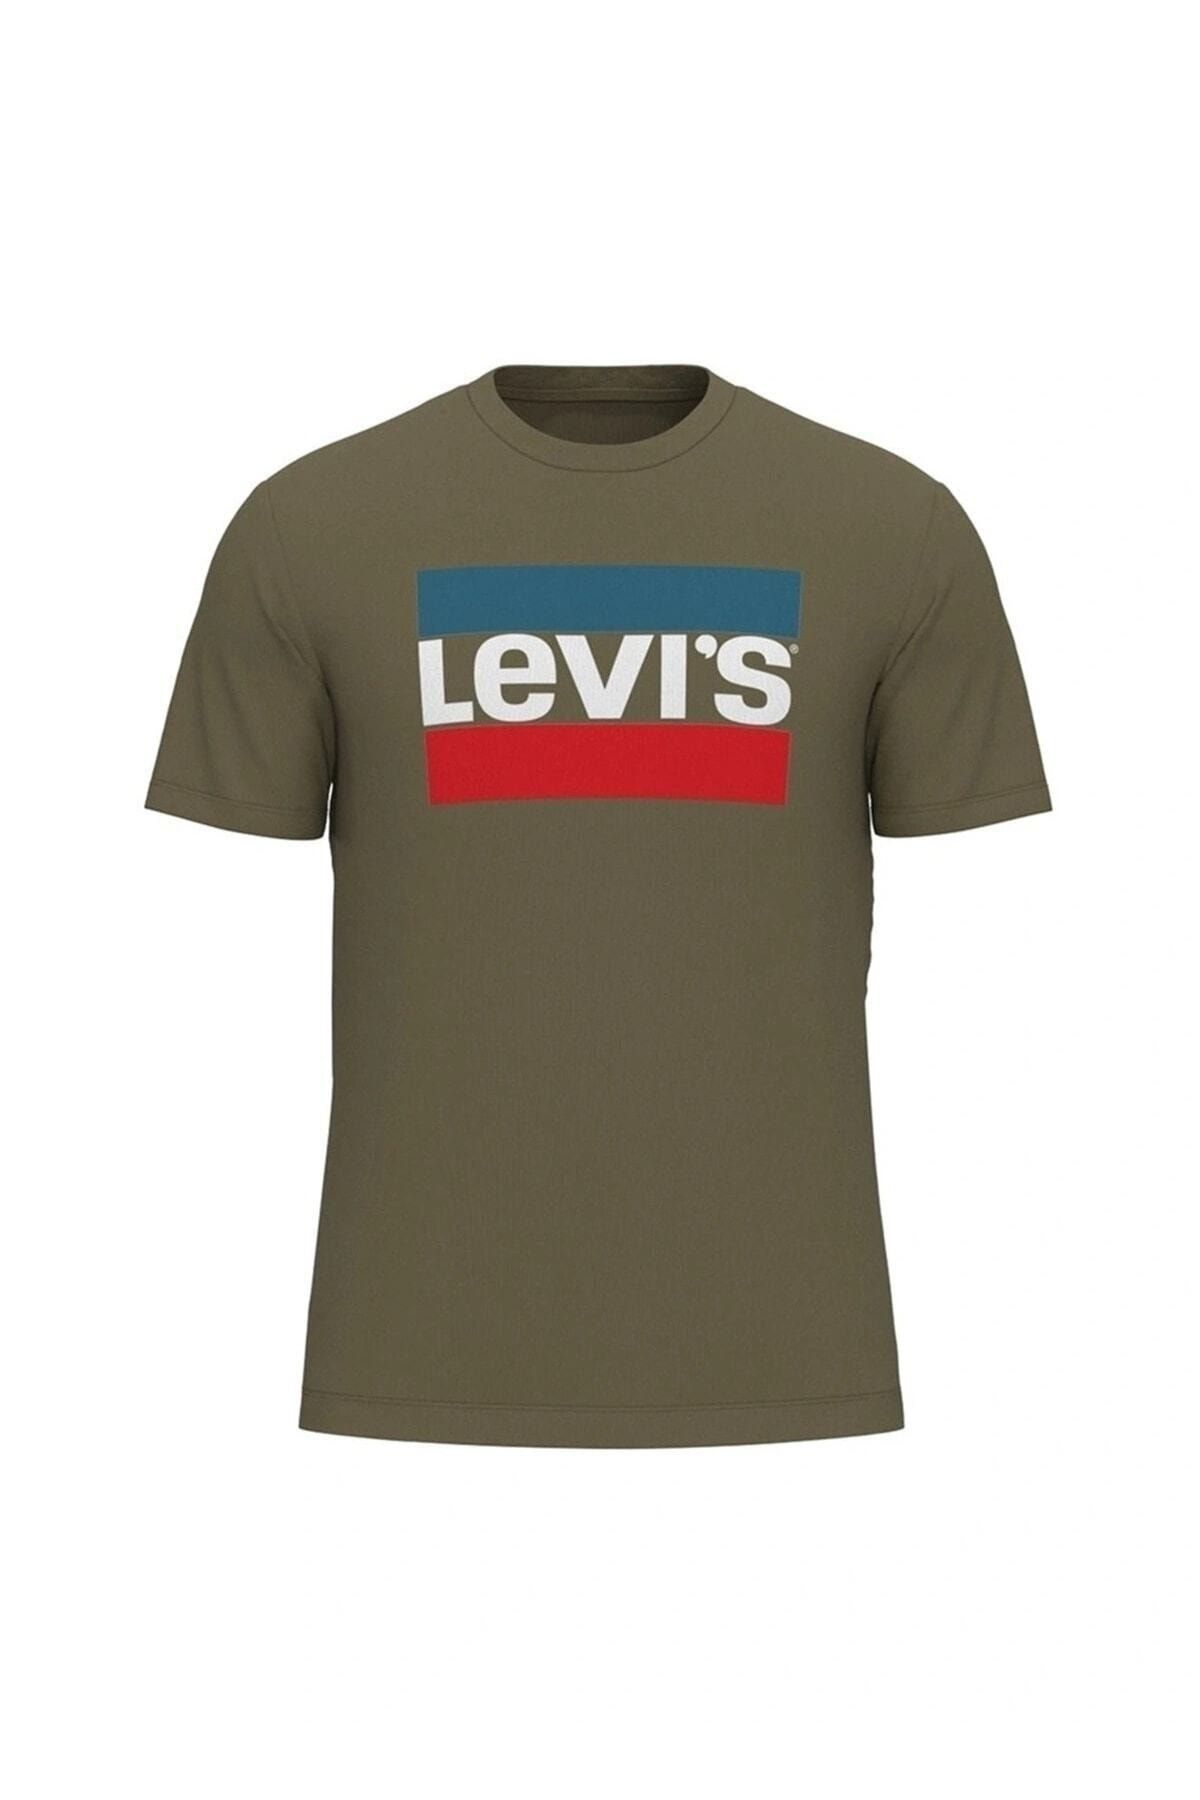 Levi's T-shirt A2823-0169